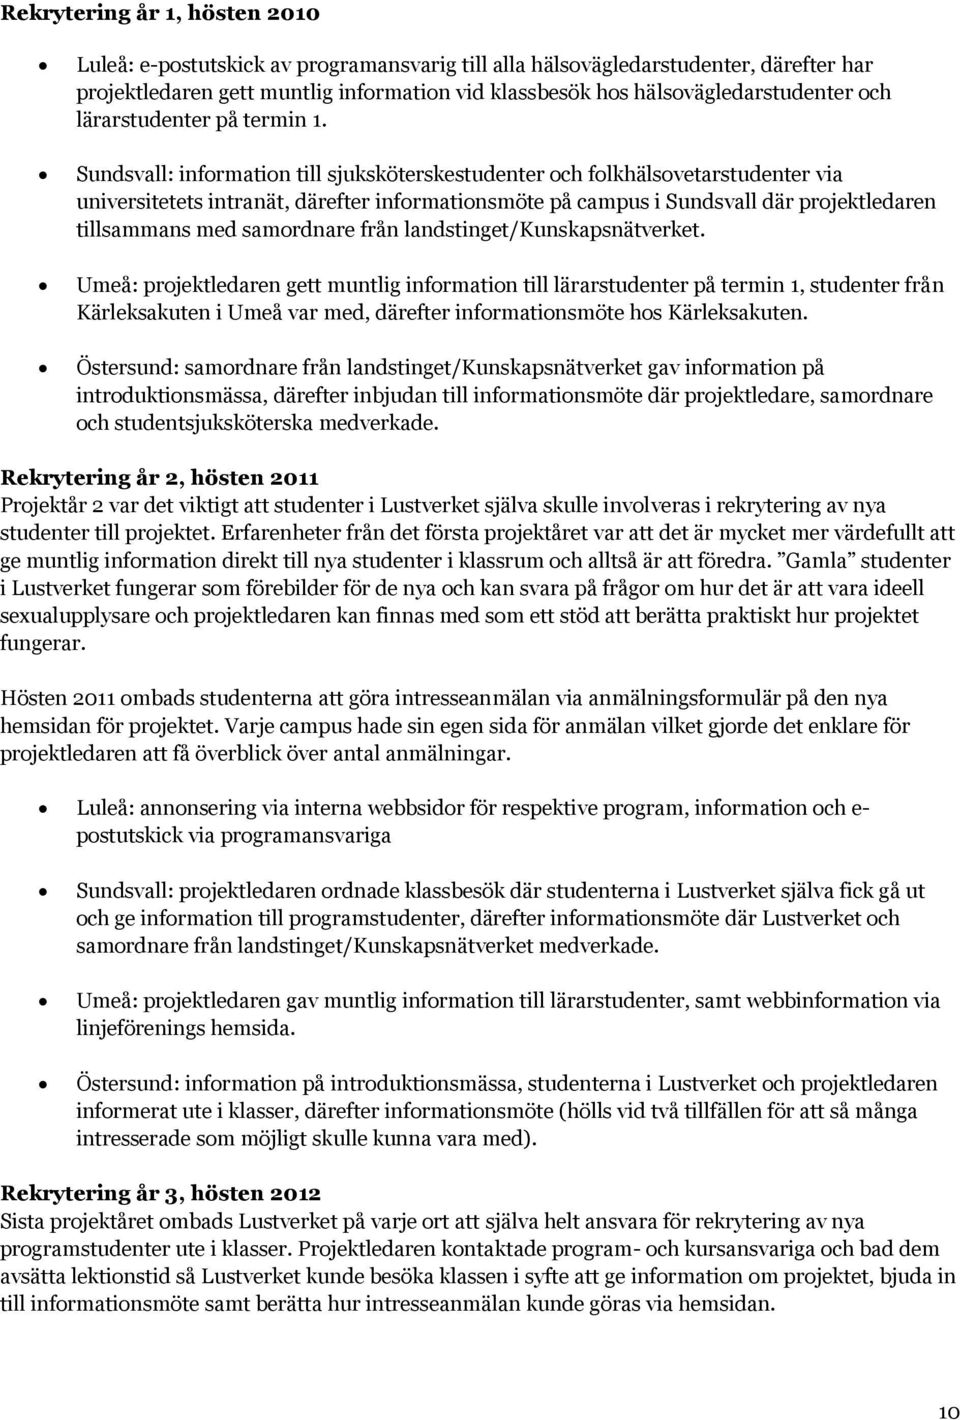 Sundsvall: information till sjuksköterskestudenter och folkhälsovetarstudenter via universitetets intranät, därefter informationsmöte på campus i Sundsvall där projektledaren tillsammans med